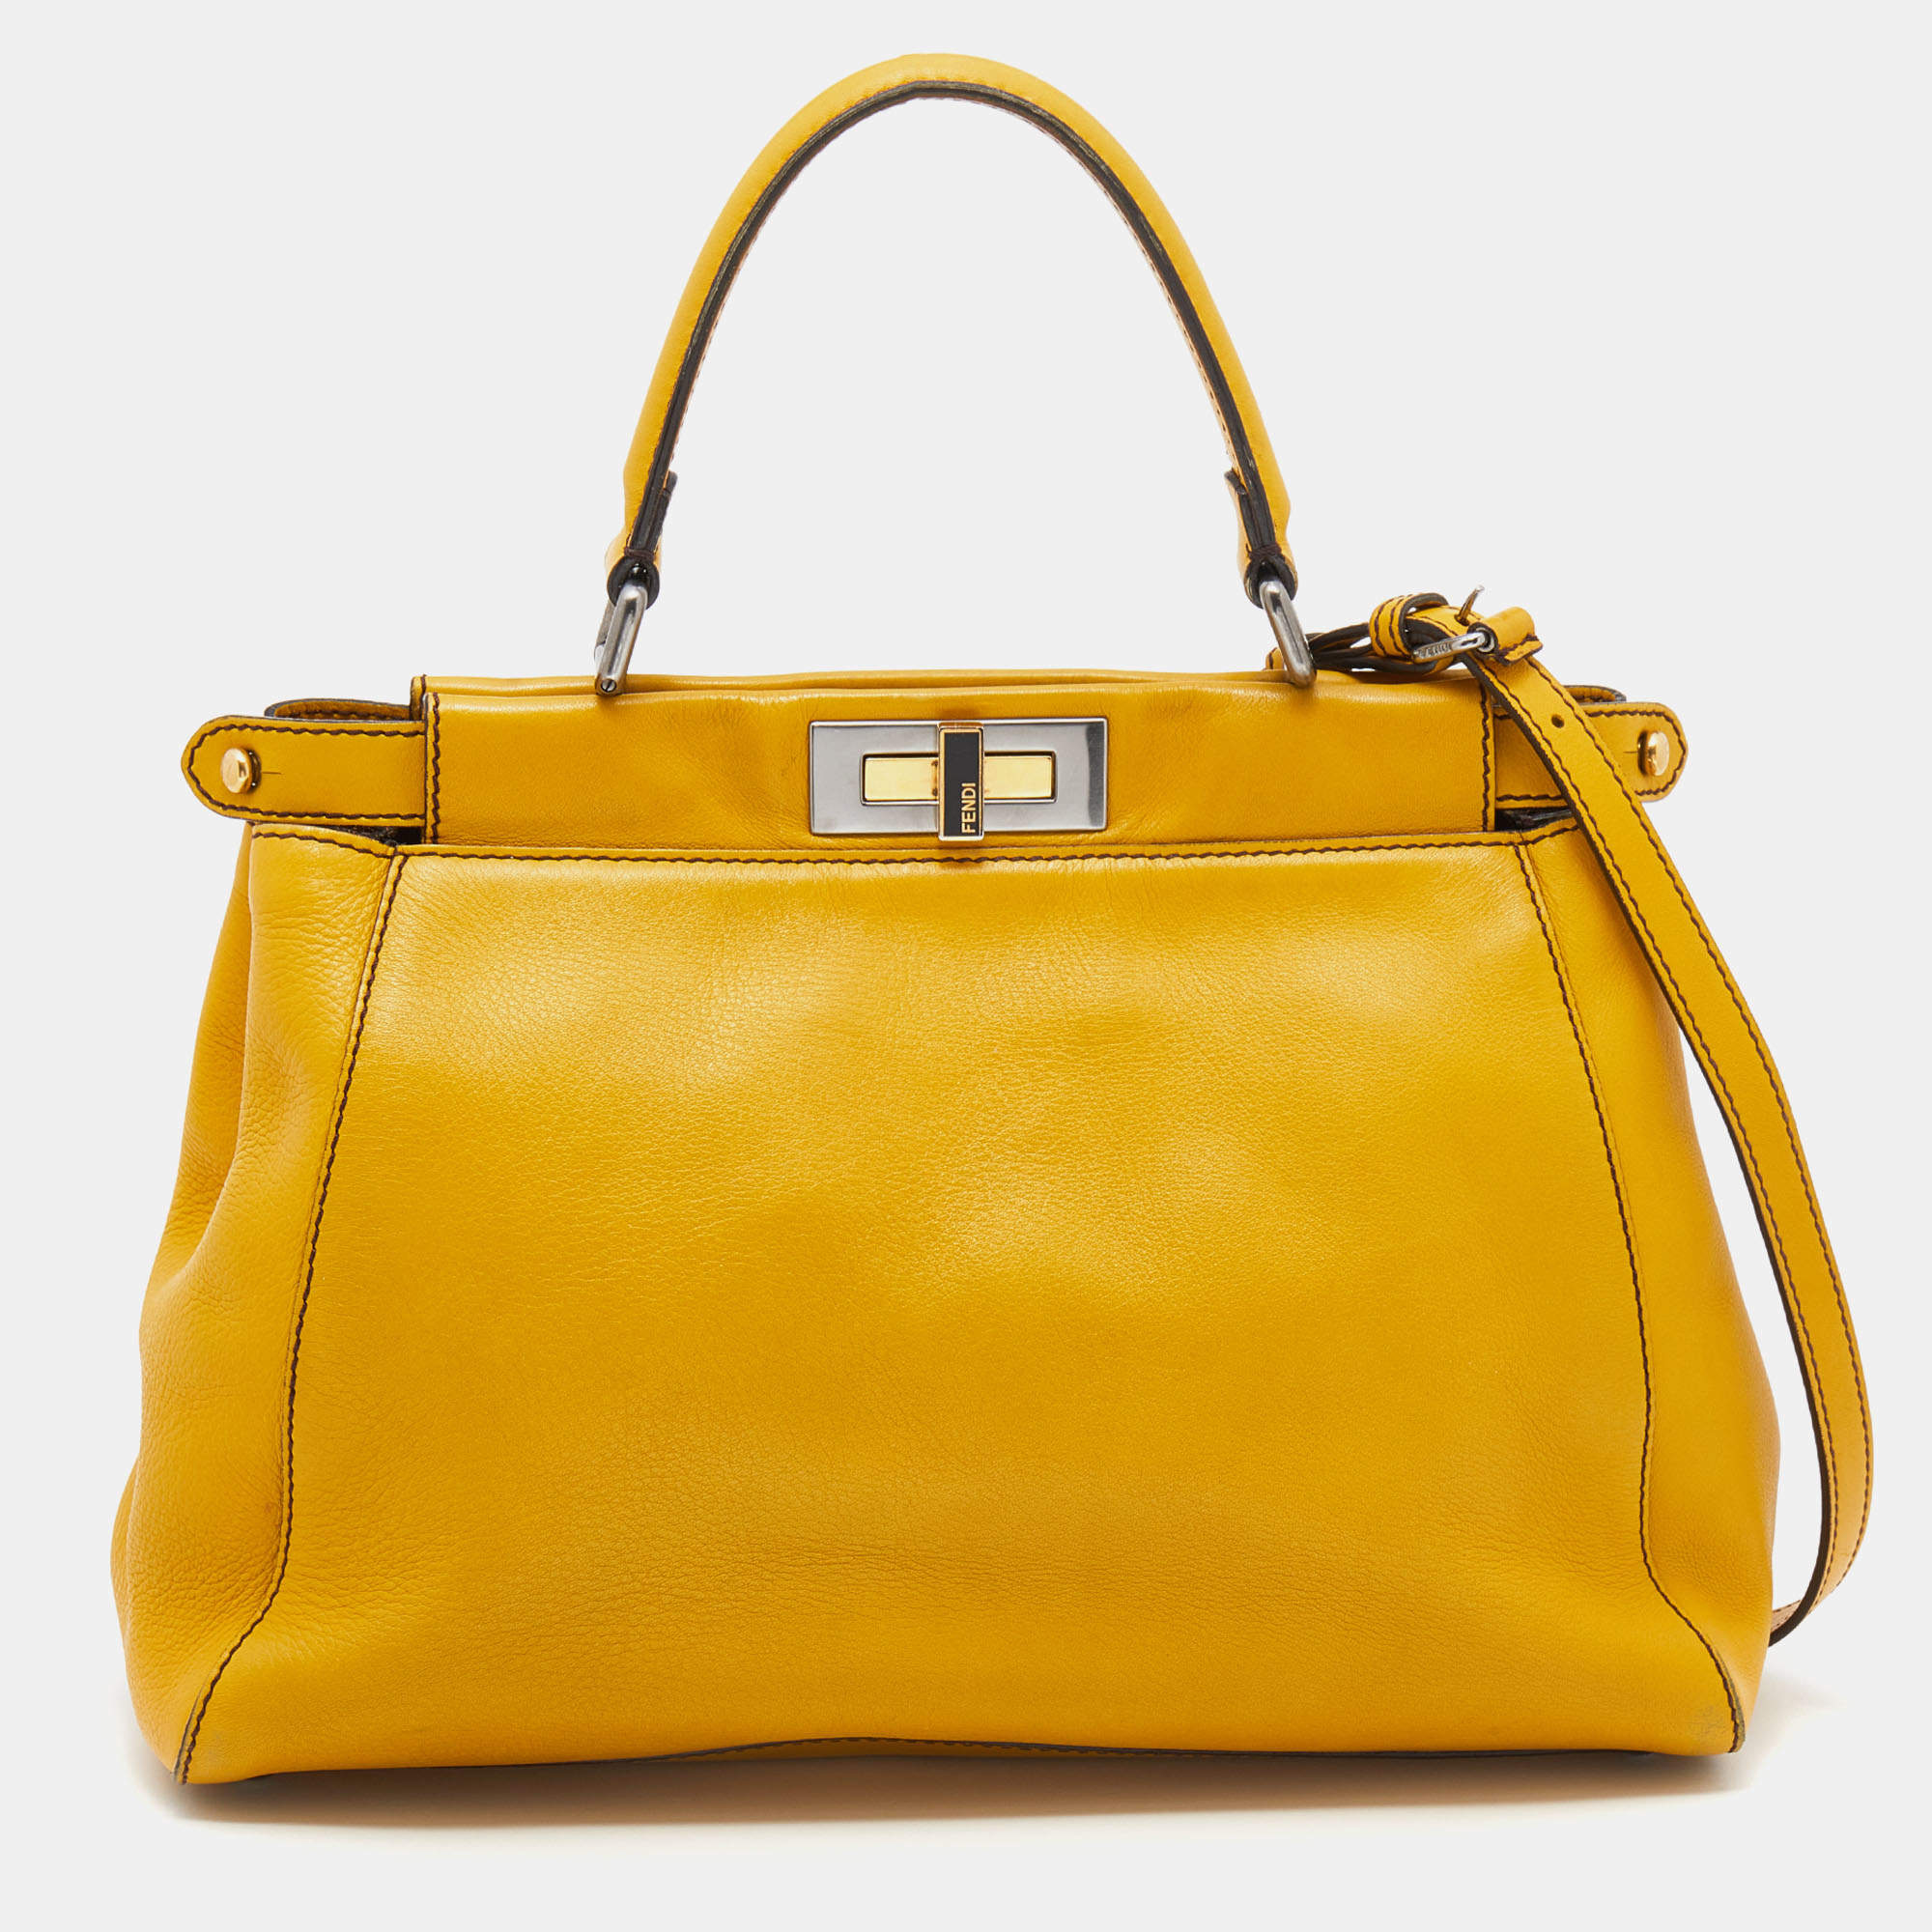 Fendi Yellow Leather Medium Peekaboo Top Handle Bag Fendi | The Luxury ...